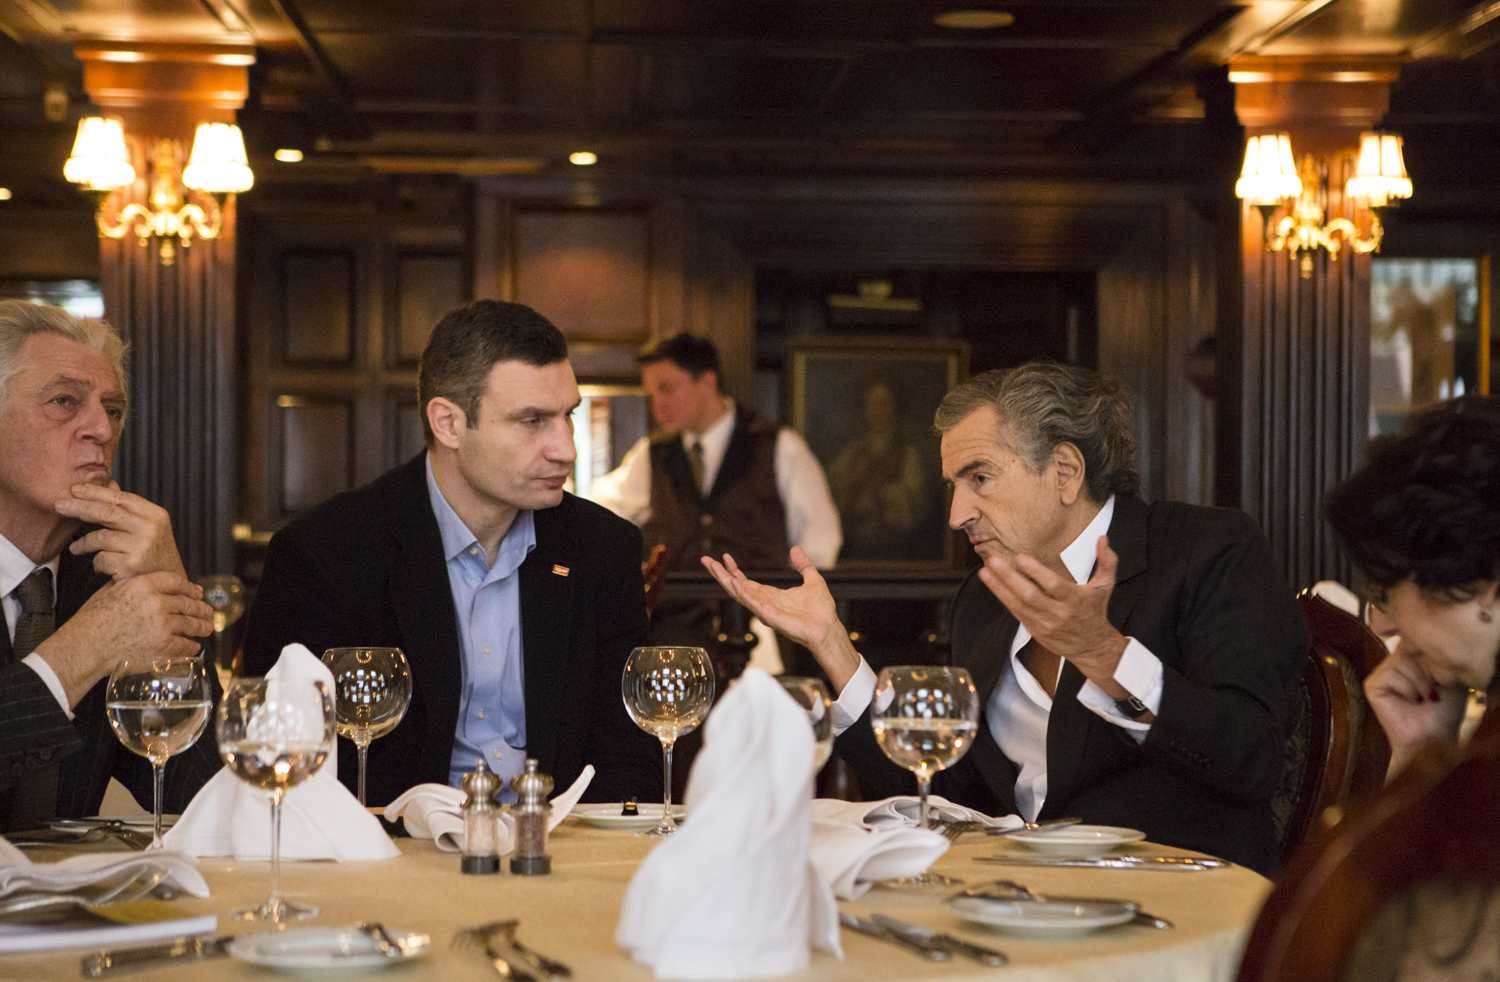 Rencontre entre Vitali Klitschko (au centre) et Bernard-Henri Levy (à droite) à Kiev le 3 mars 2014, dans un restaurant.